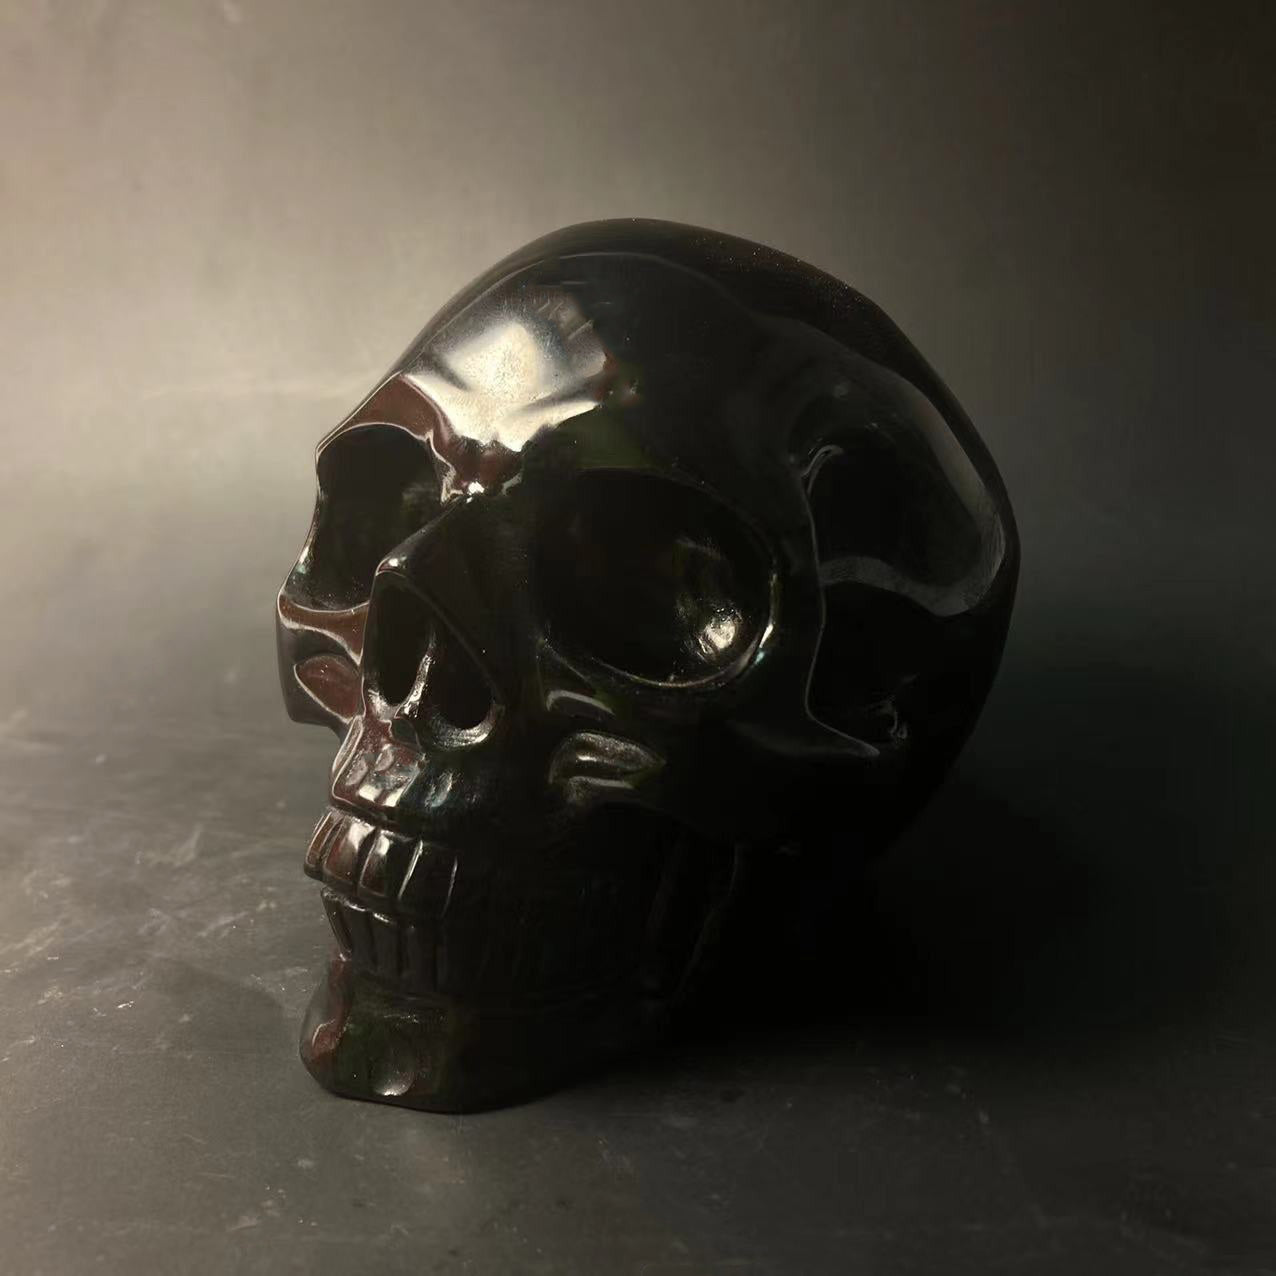 RoseQuartz&BlackObsidian Skull